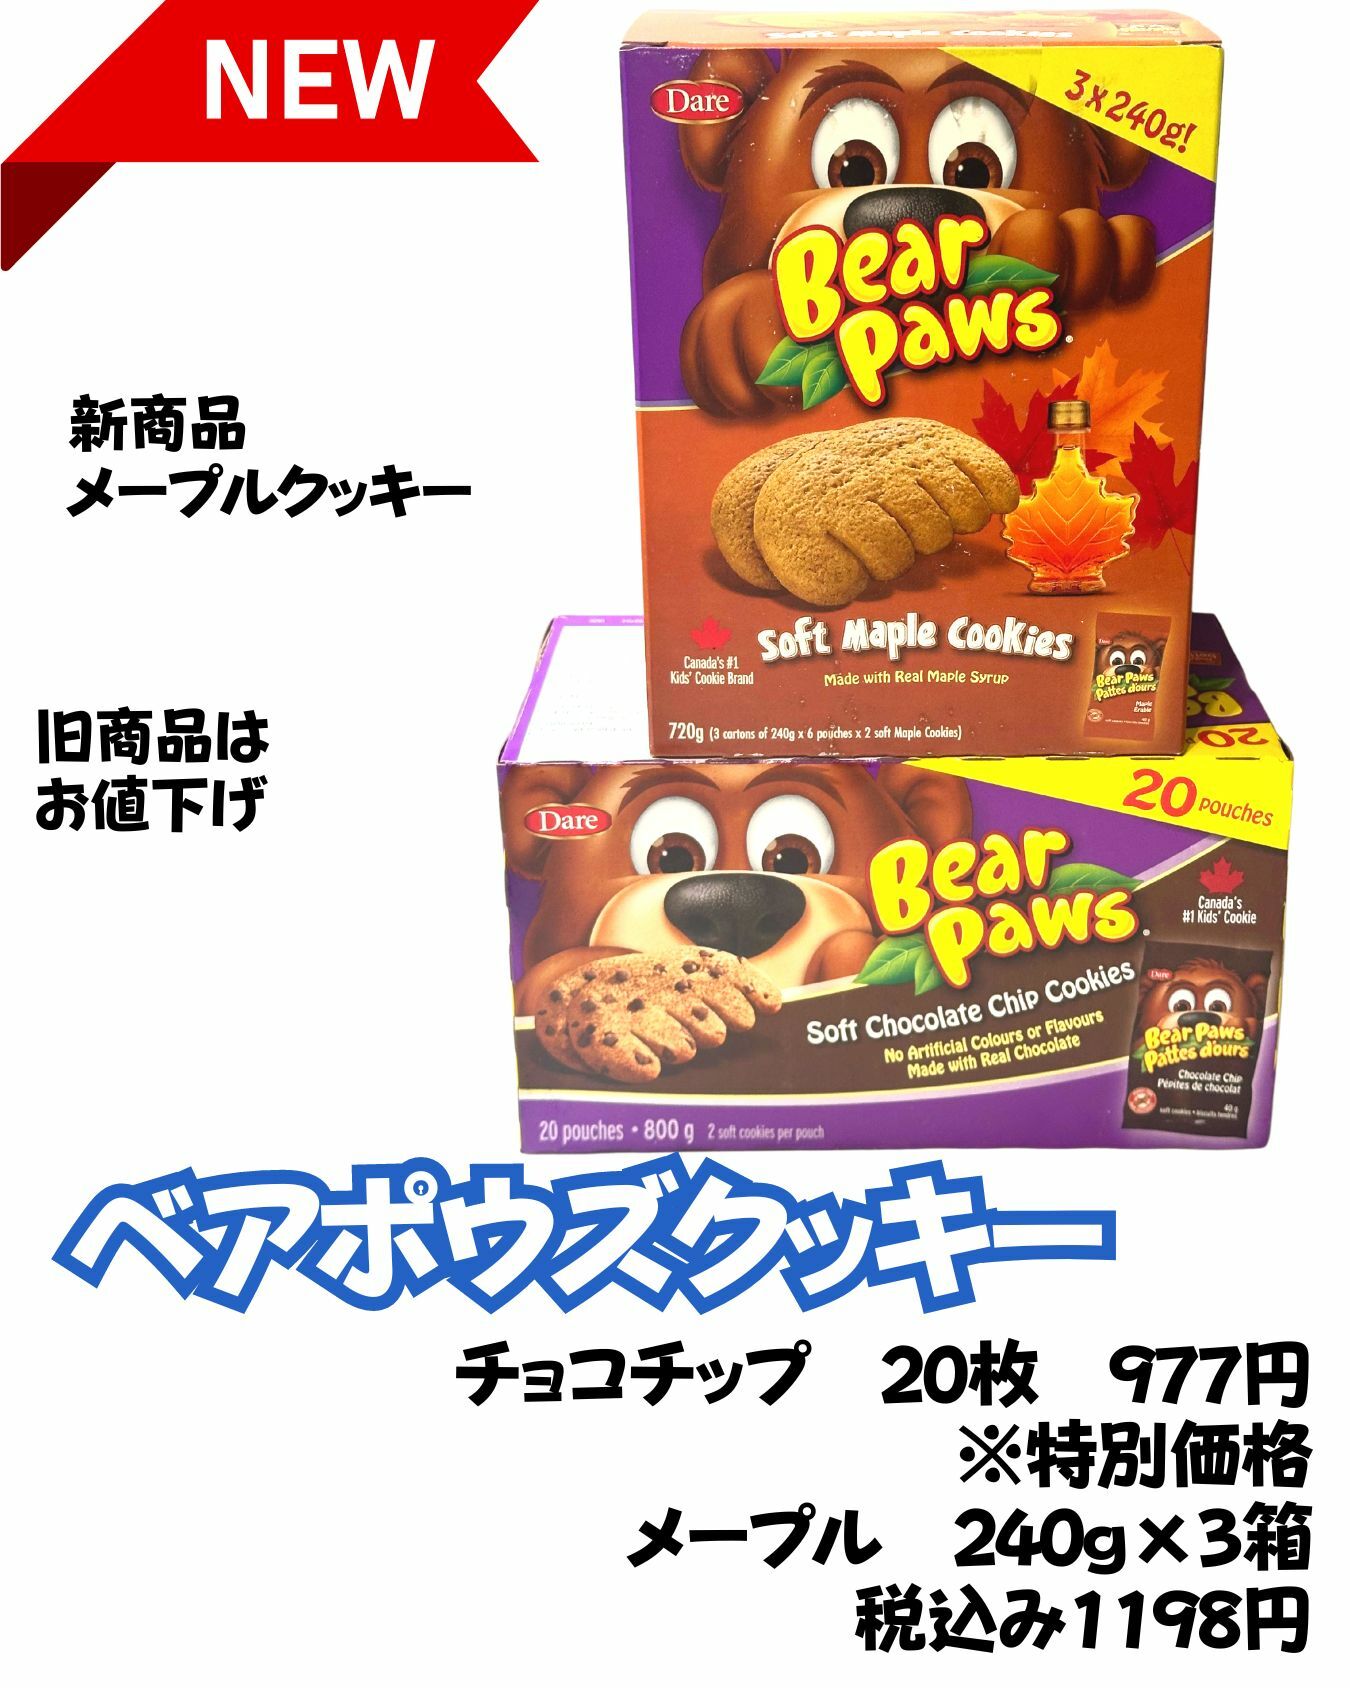 【コストコ】新商品ベアポウズBearPawsソフトクッキー